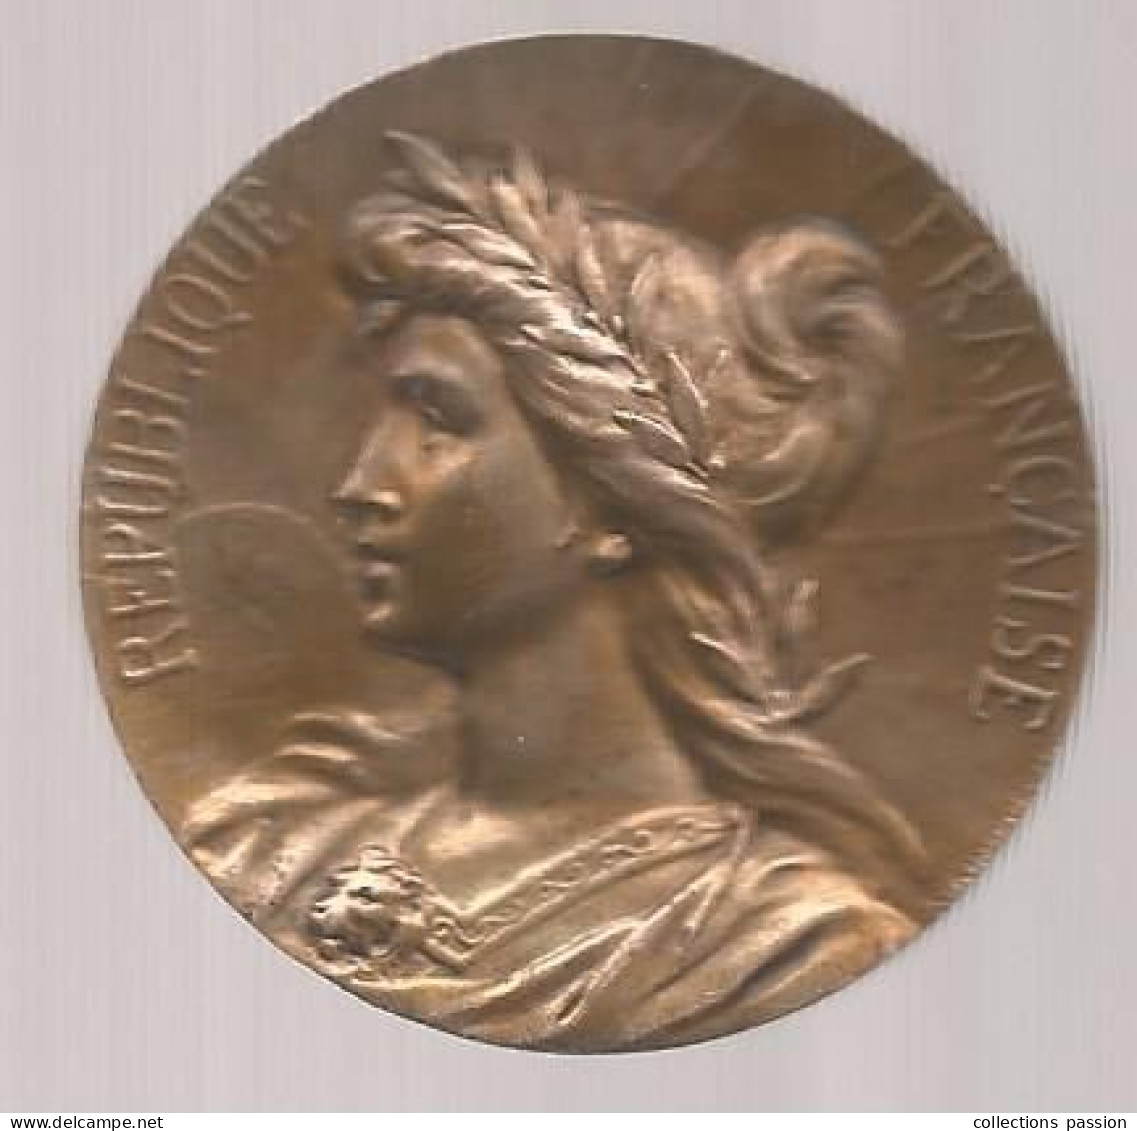 Médaille, Comice Agricole De L'arrondissement De CHINON, Indre Et Loire, Graveur: S. KINSBURGER, 50 Gr., Frais Fr 3.35 E - Professionals/Firms